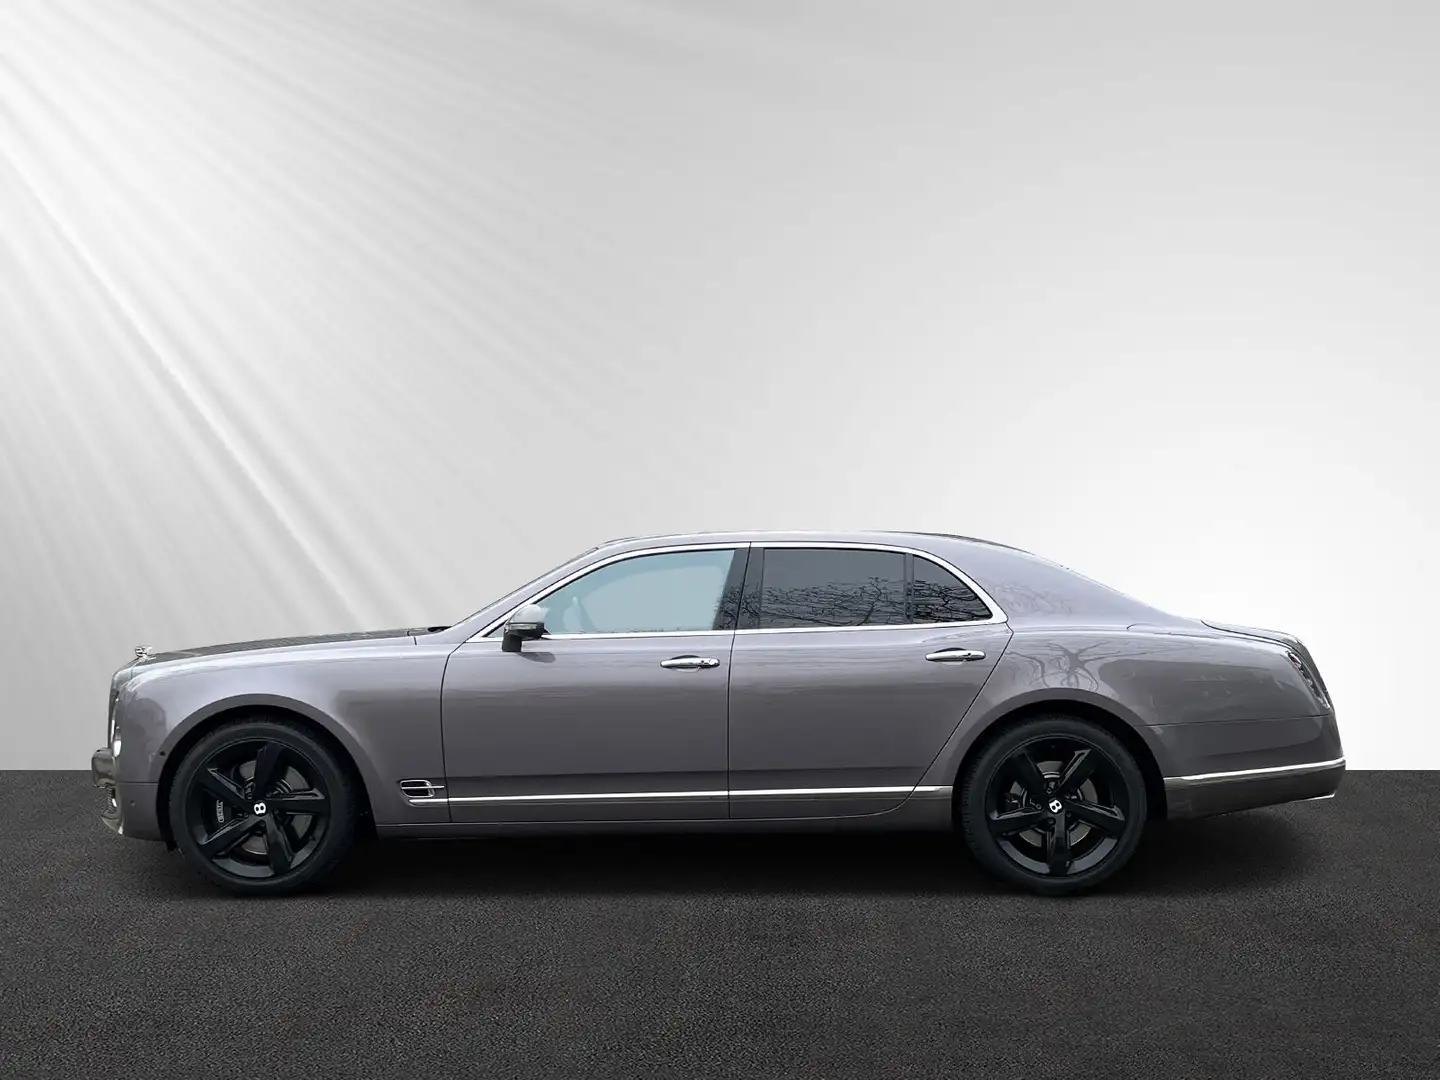 Bentley Mulsanne 6.8 Speed, Carbon Grey - 2